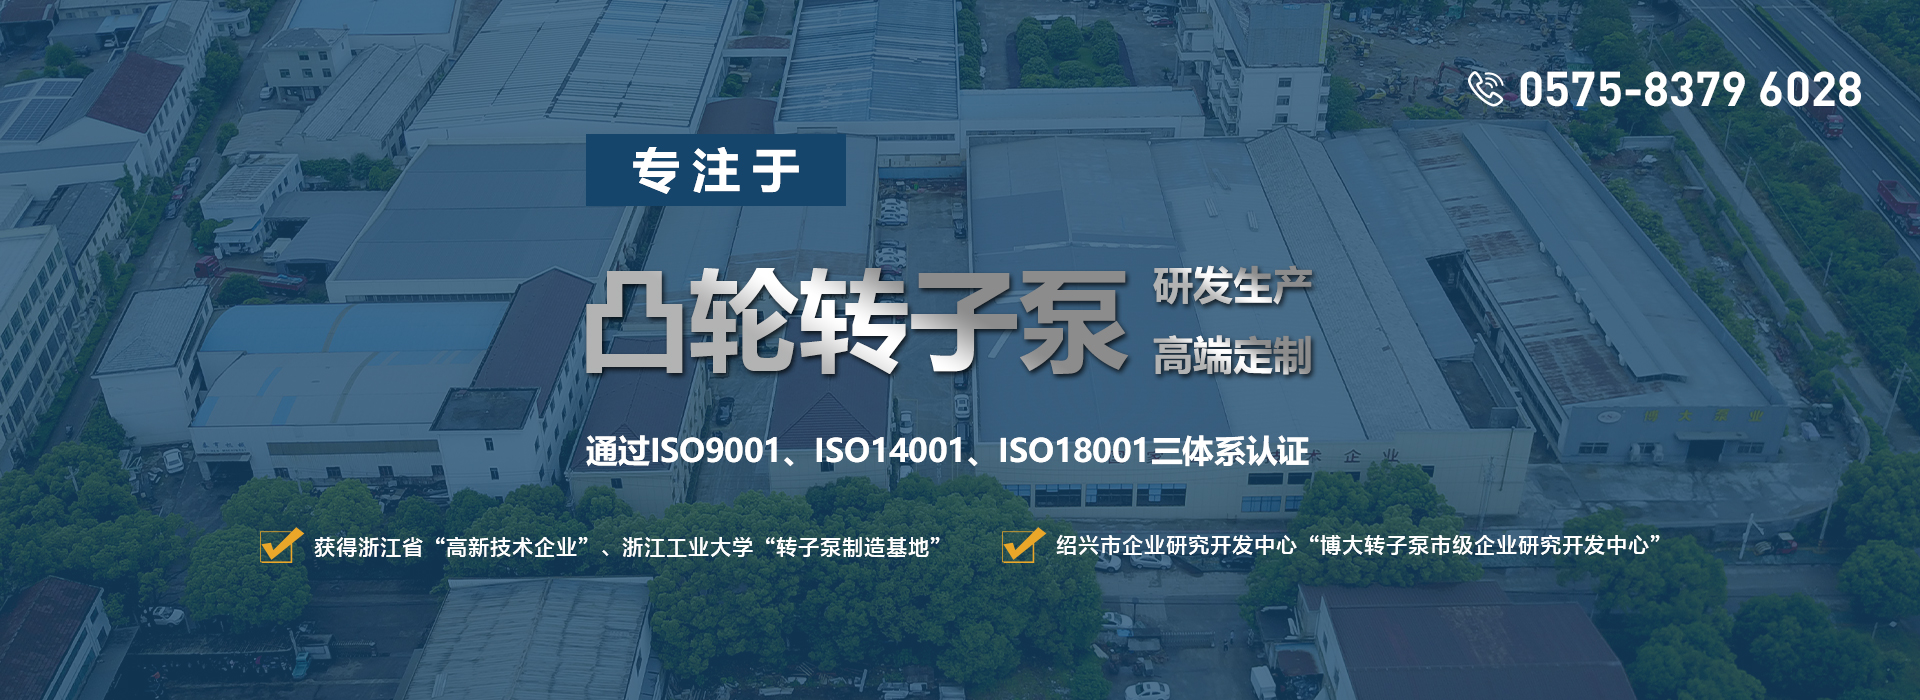 網站首頁-浙江博大泵業有限公司